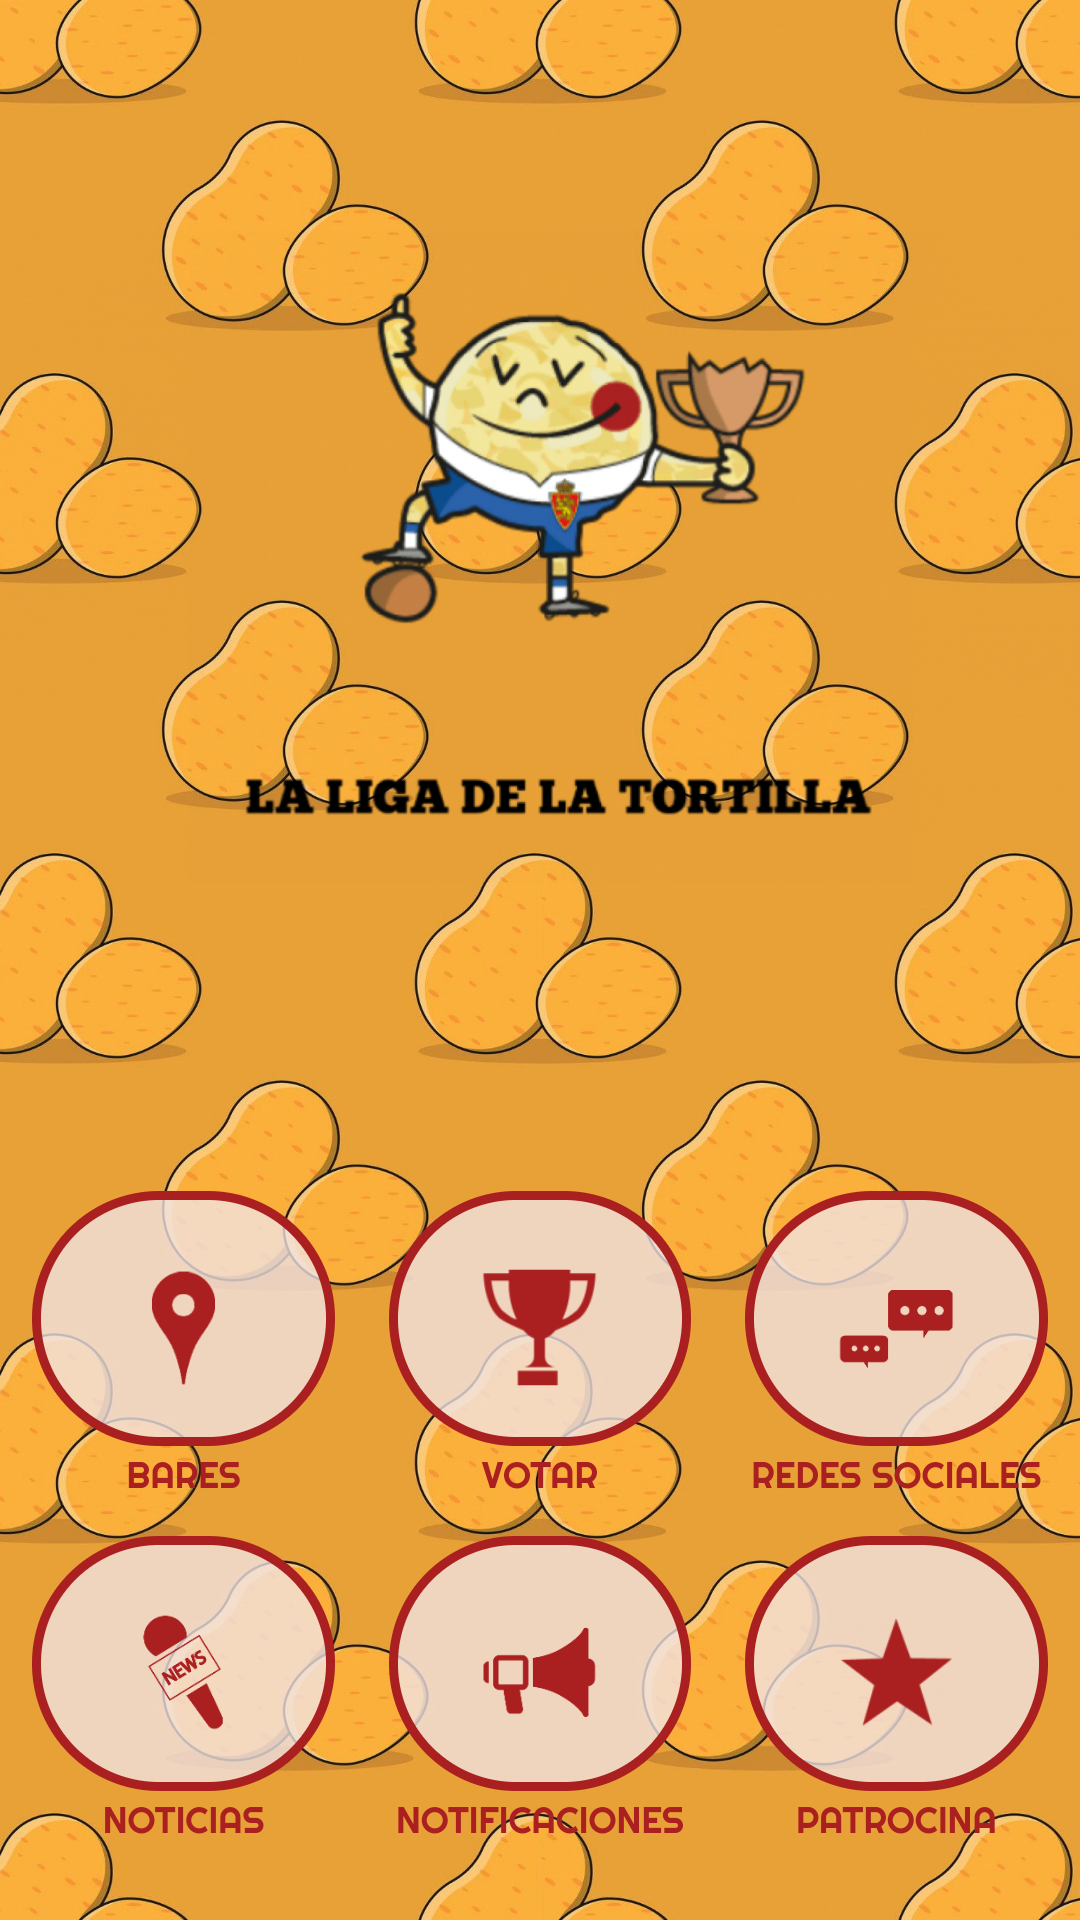 Aplicación oficial de la liga de la tortilla